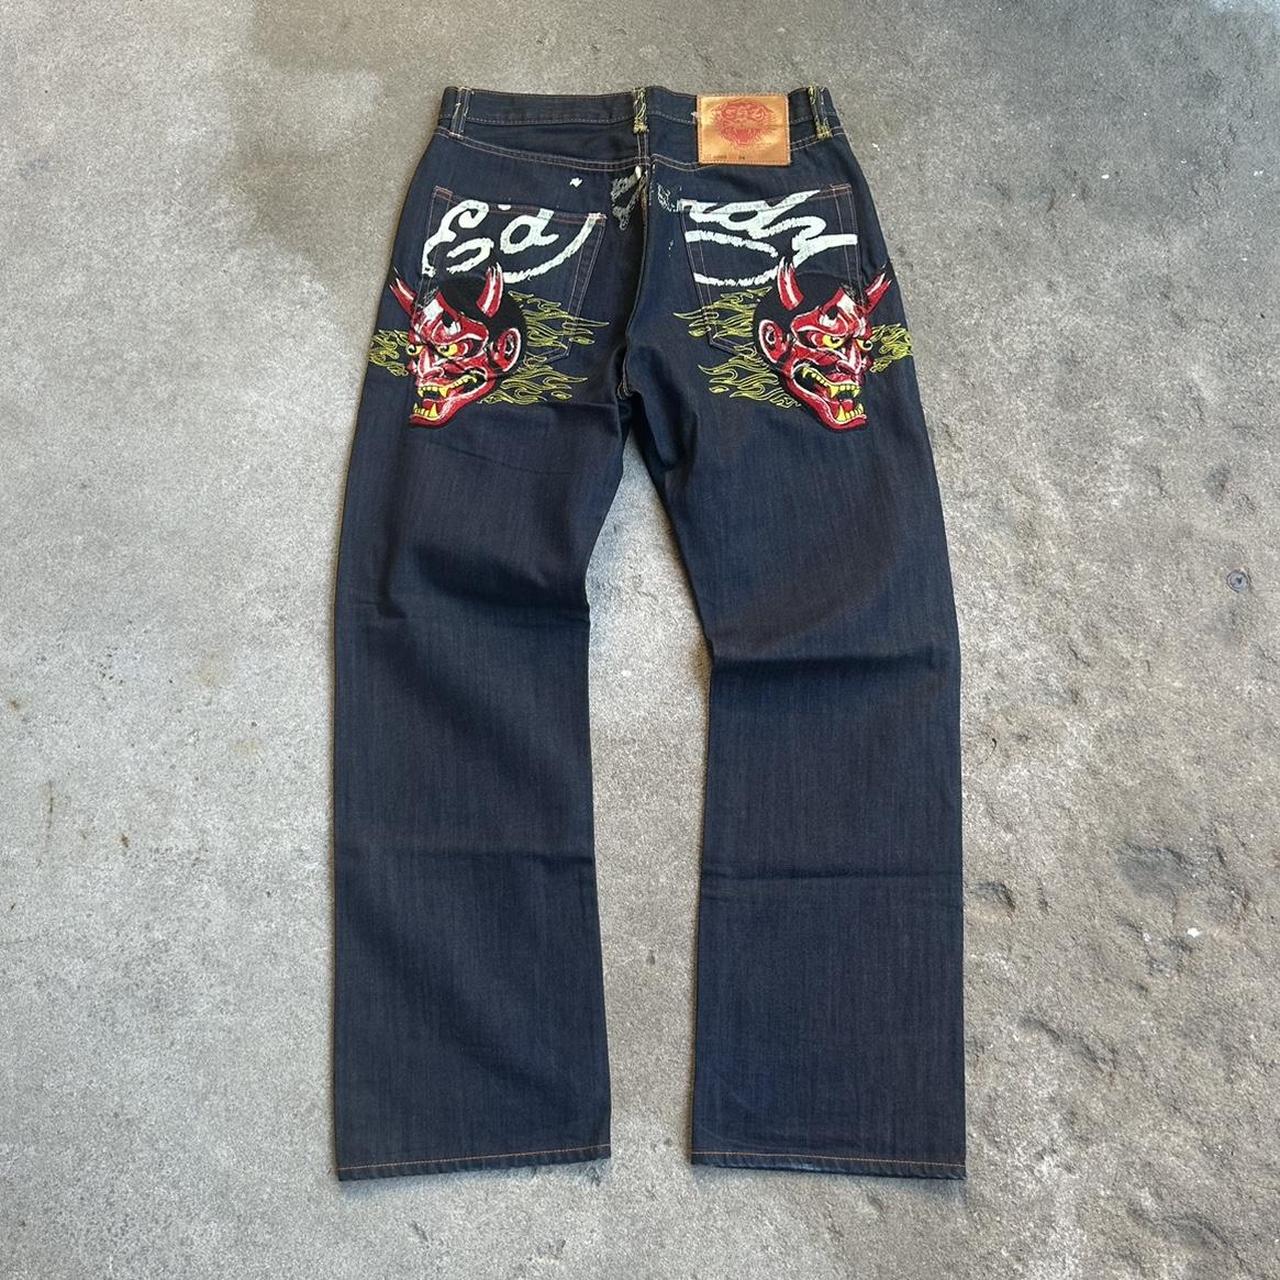 Early 2000’s / Vintage Ed Hardy Jeans Wide Leg... - Depop